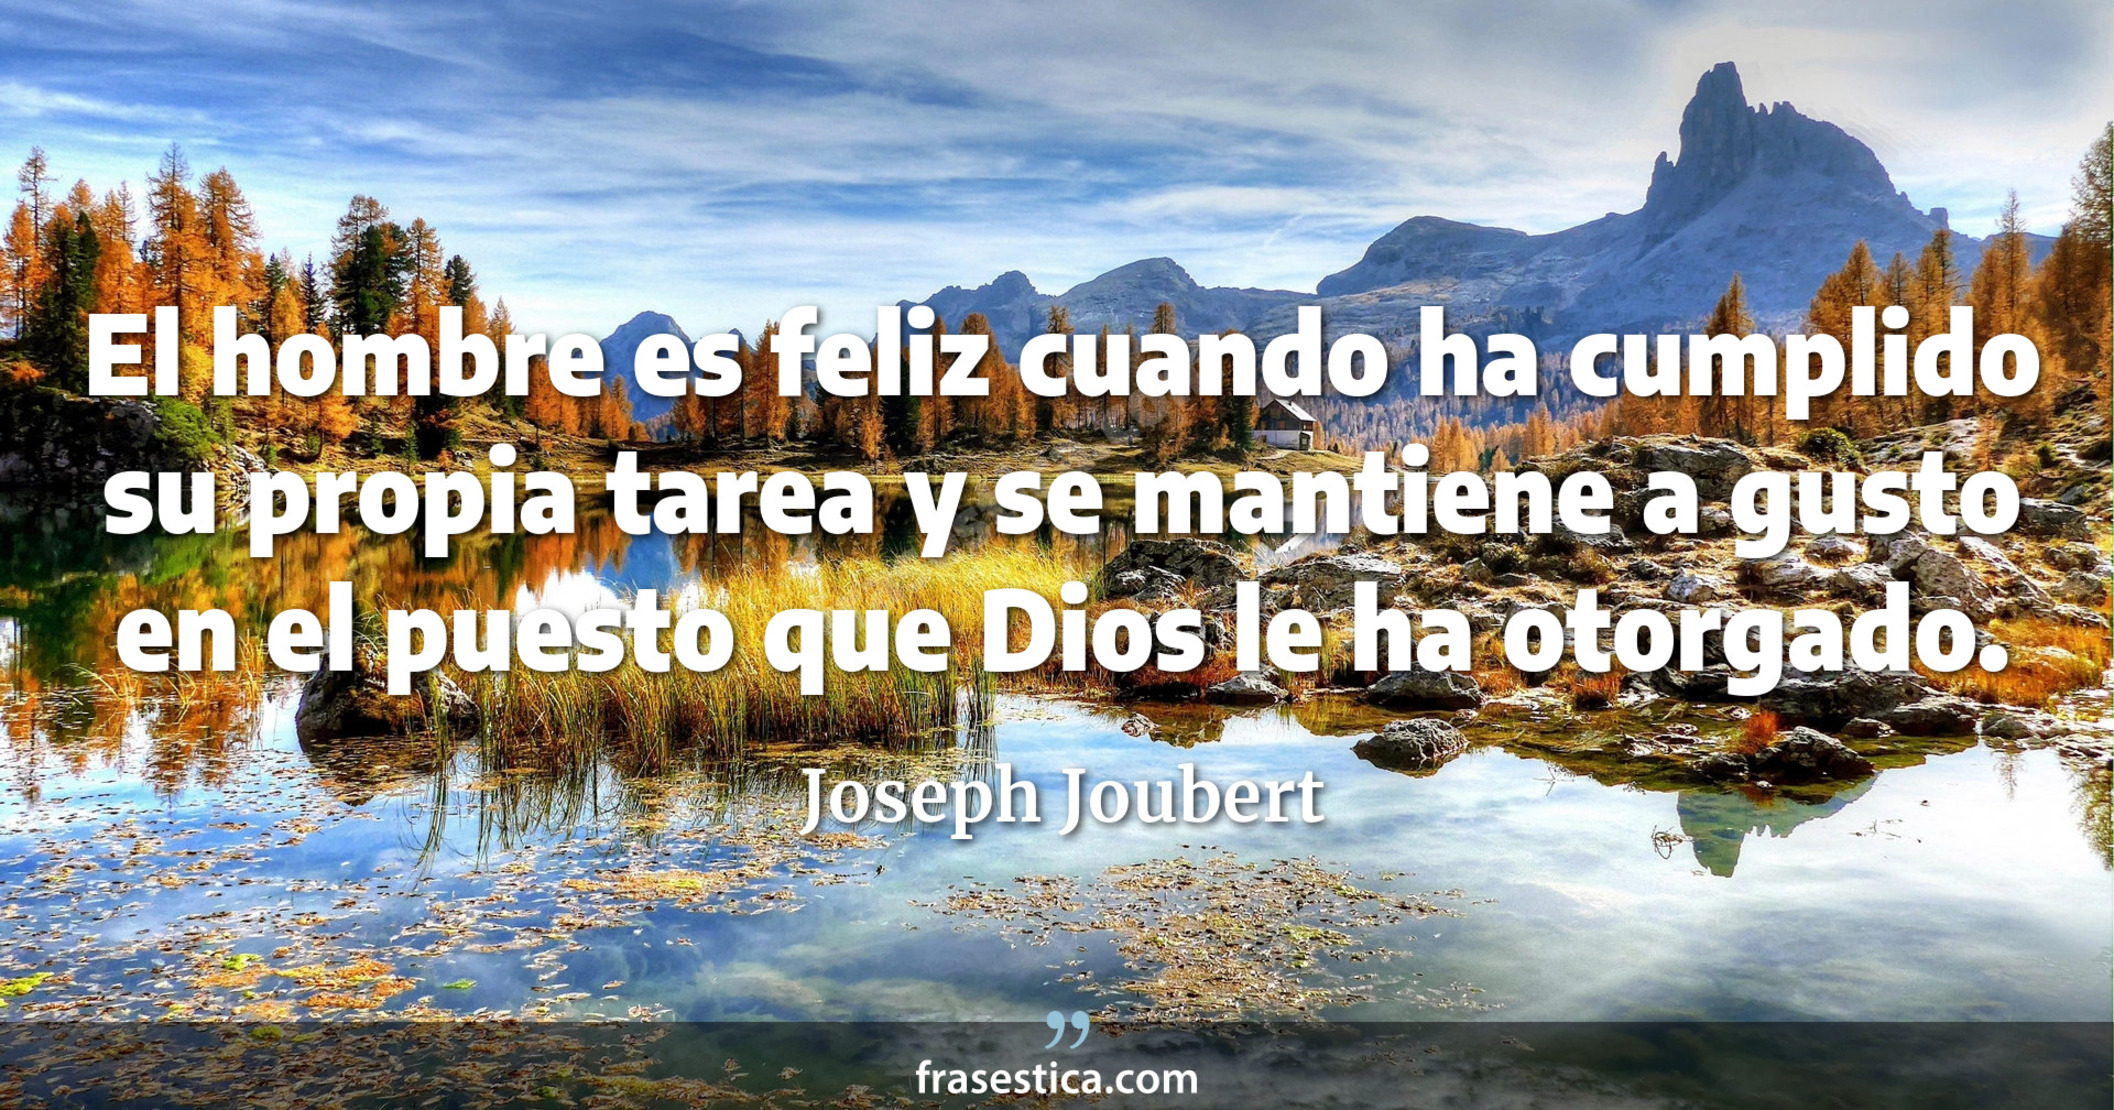 El hombre es feliz cuando ha cumplido su propia tarea y se mantiene a gusto en el puesto que Dios le ha otorgado. - Joseph Joubert